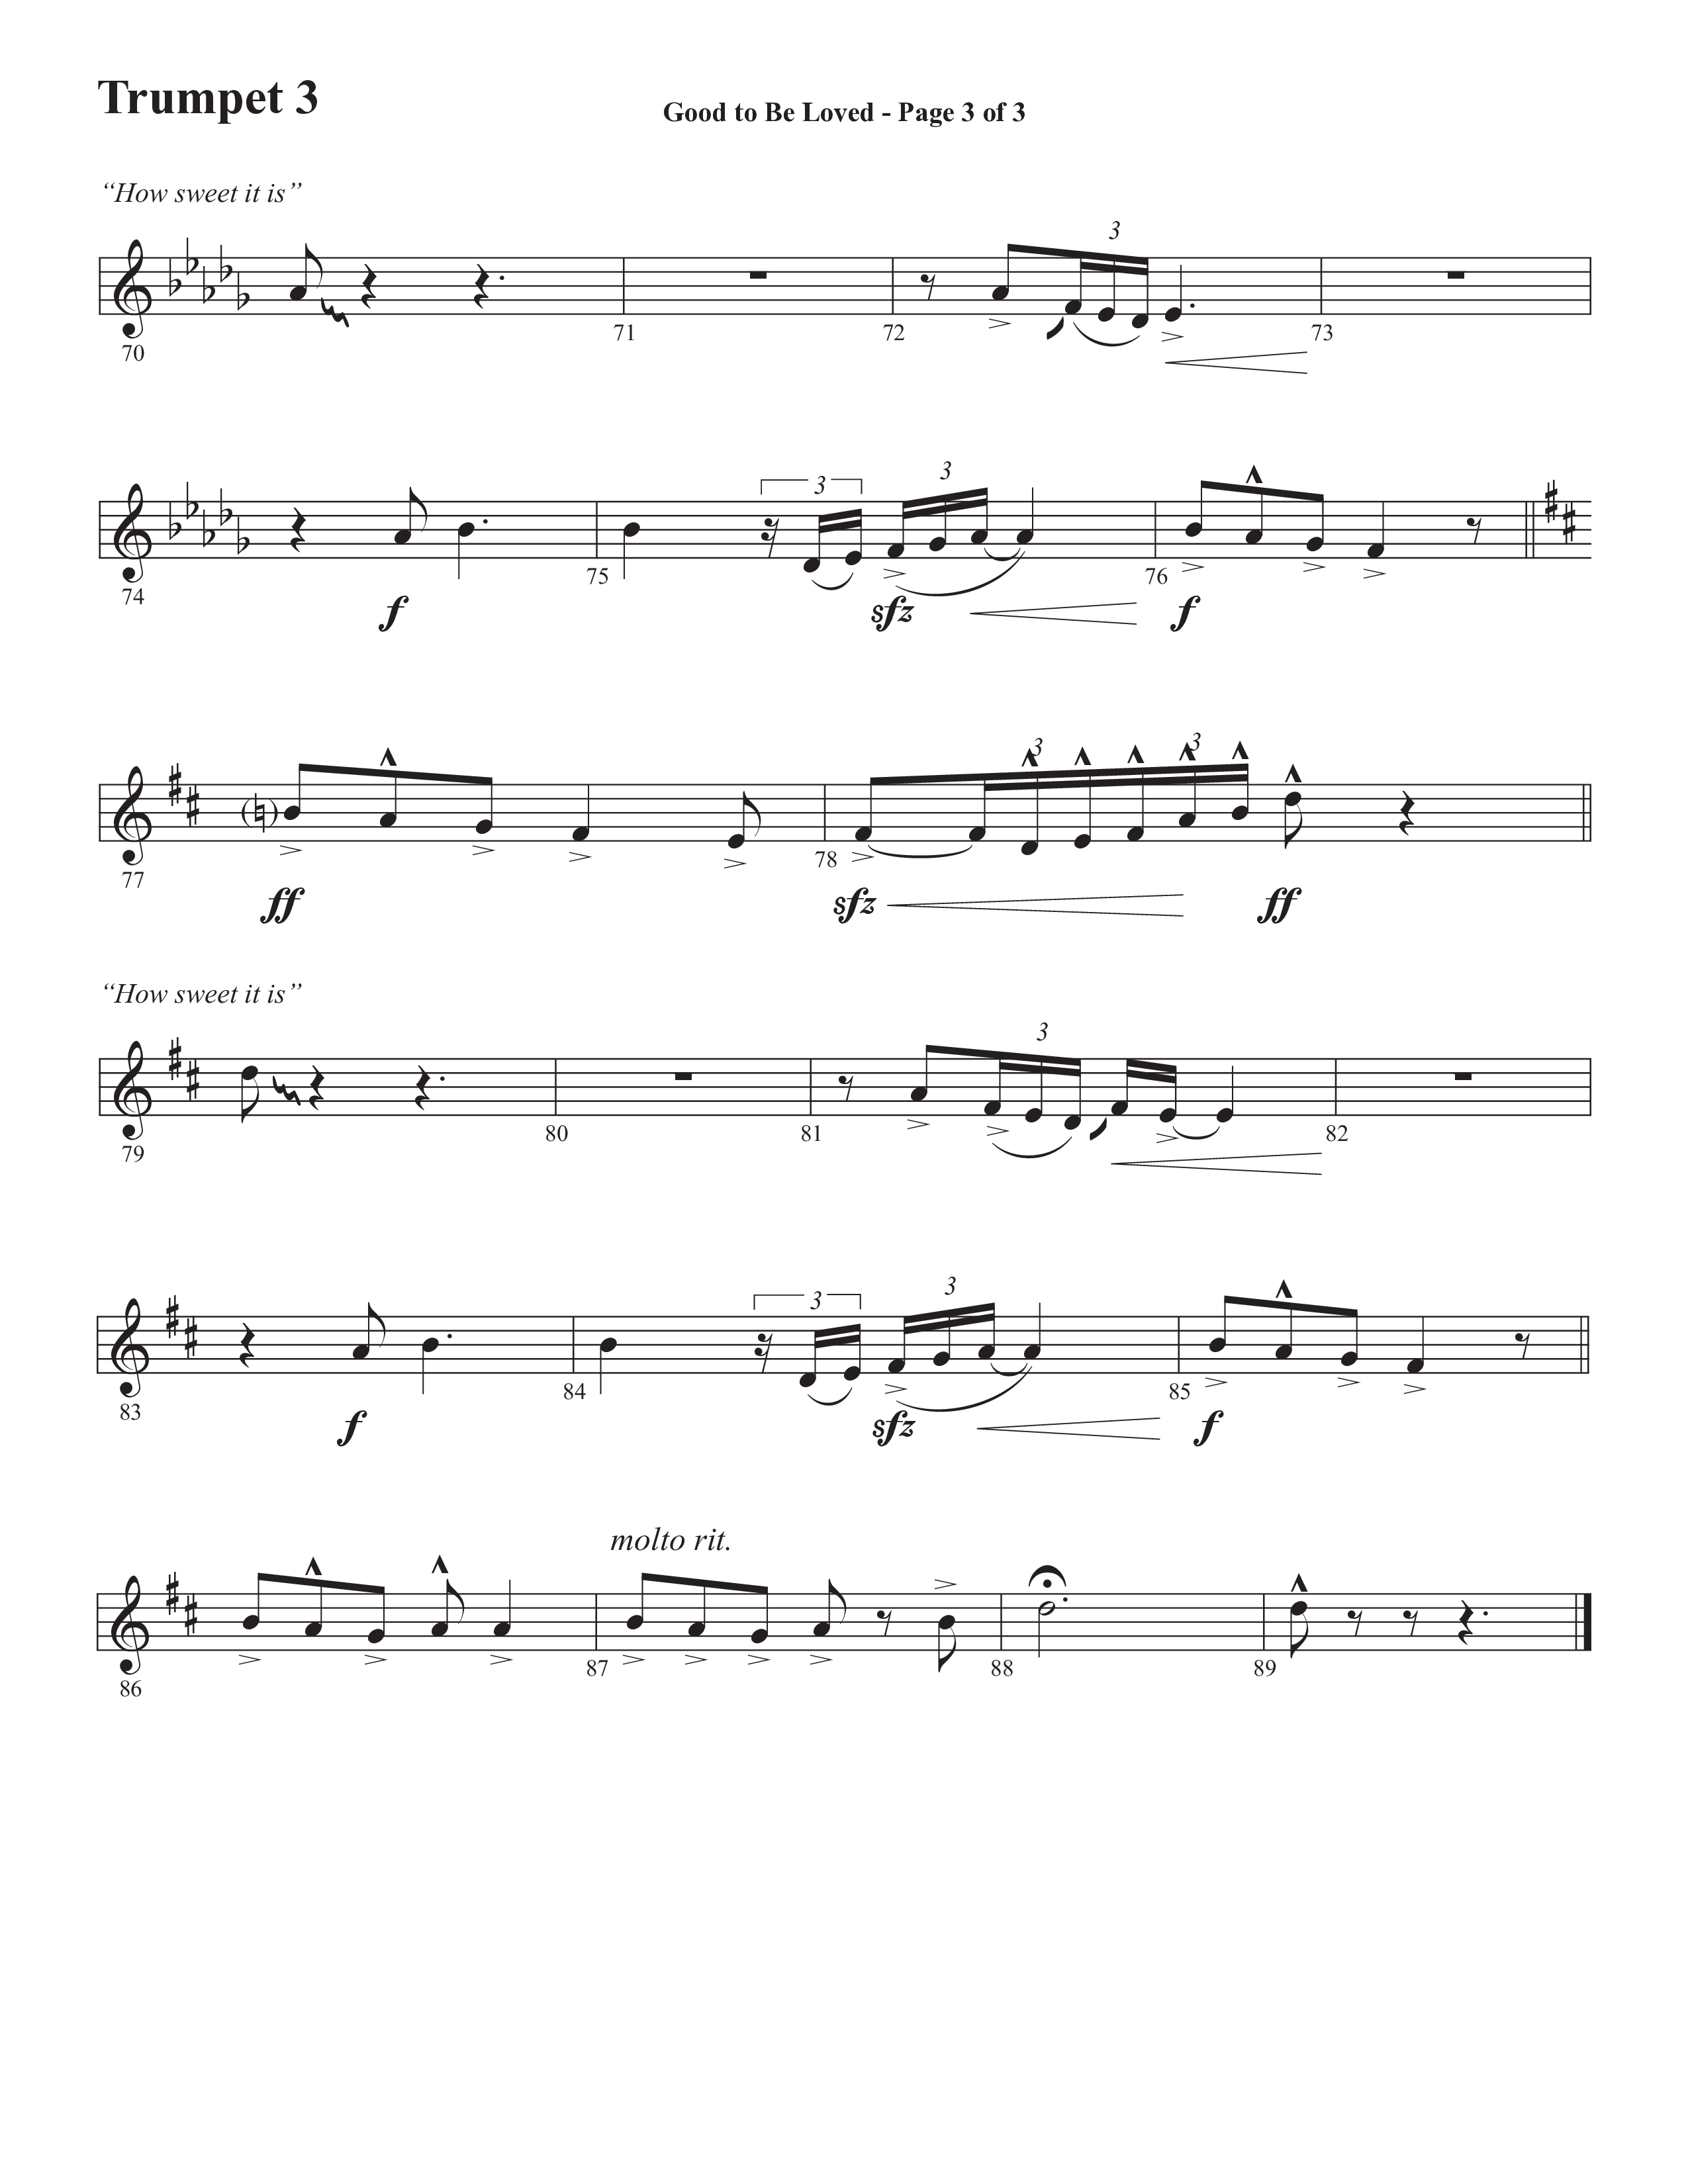 Good To Be Loved (Choral Anthem SATB) Trumpet 3 (Semsen Music / Arr. Cliff Duren)